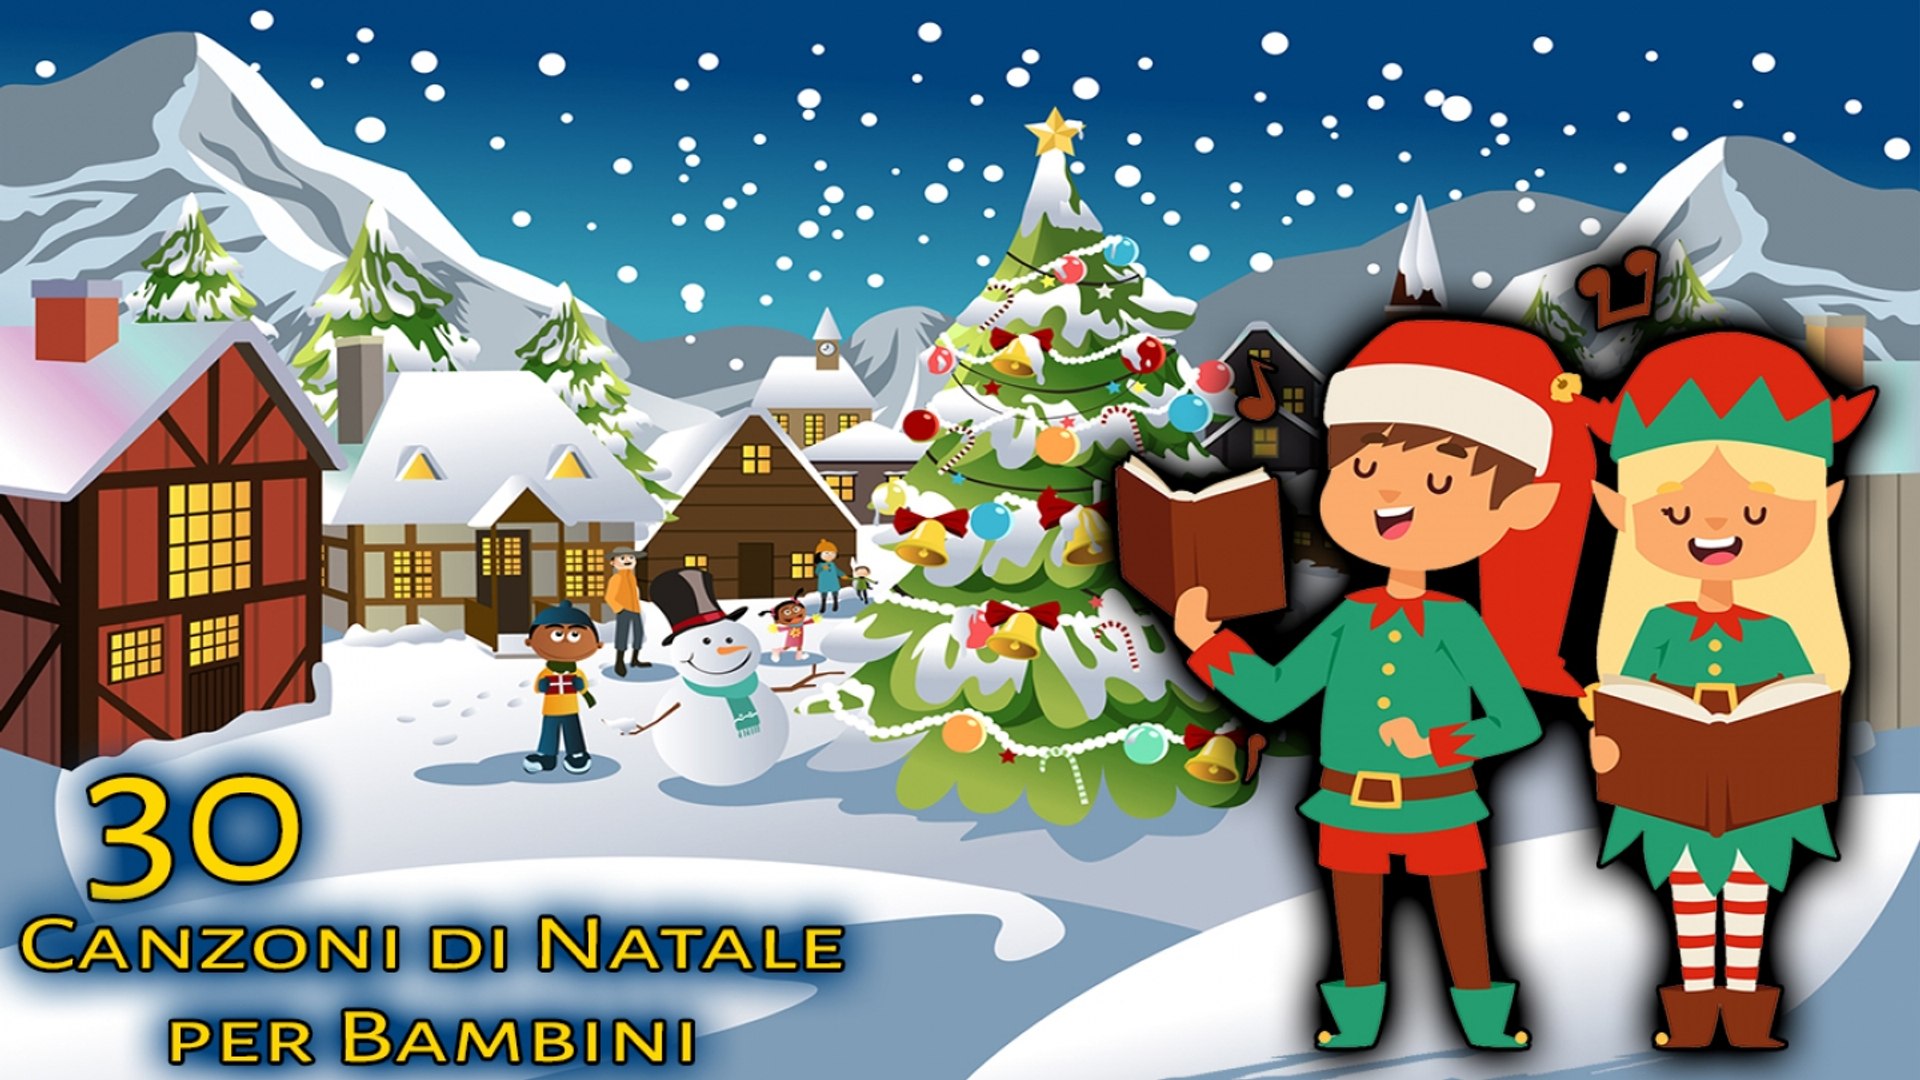 Canzoni Di Natale.Va Top 30 Canzoni Di Natale Per Bambini Canzoni Per Bambini Video Dailymotion